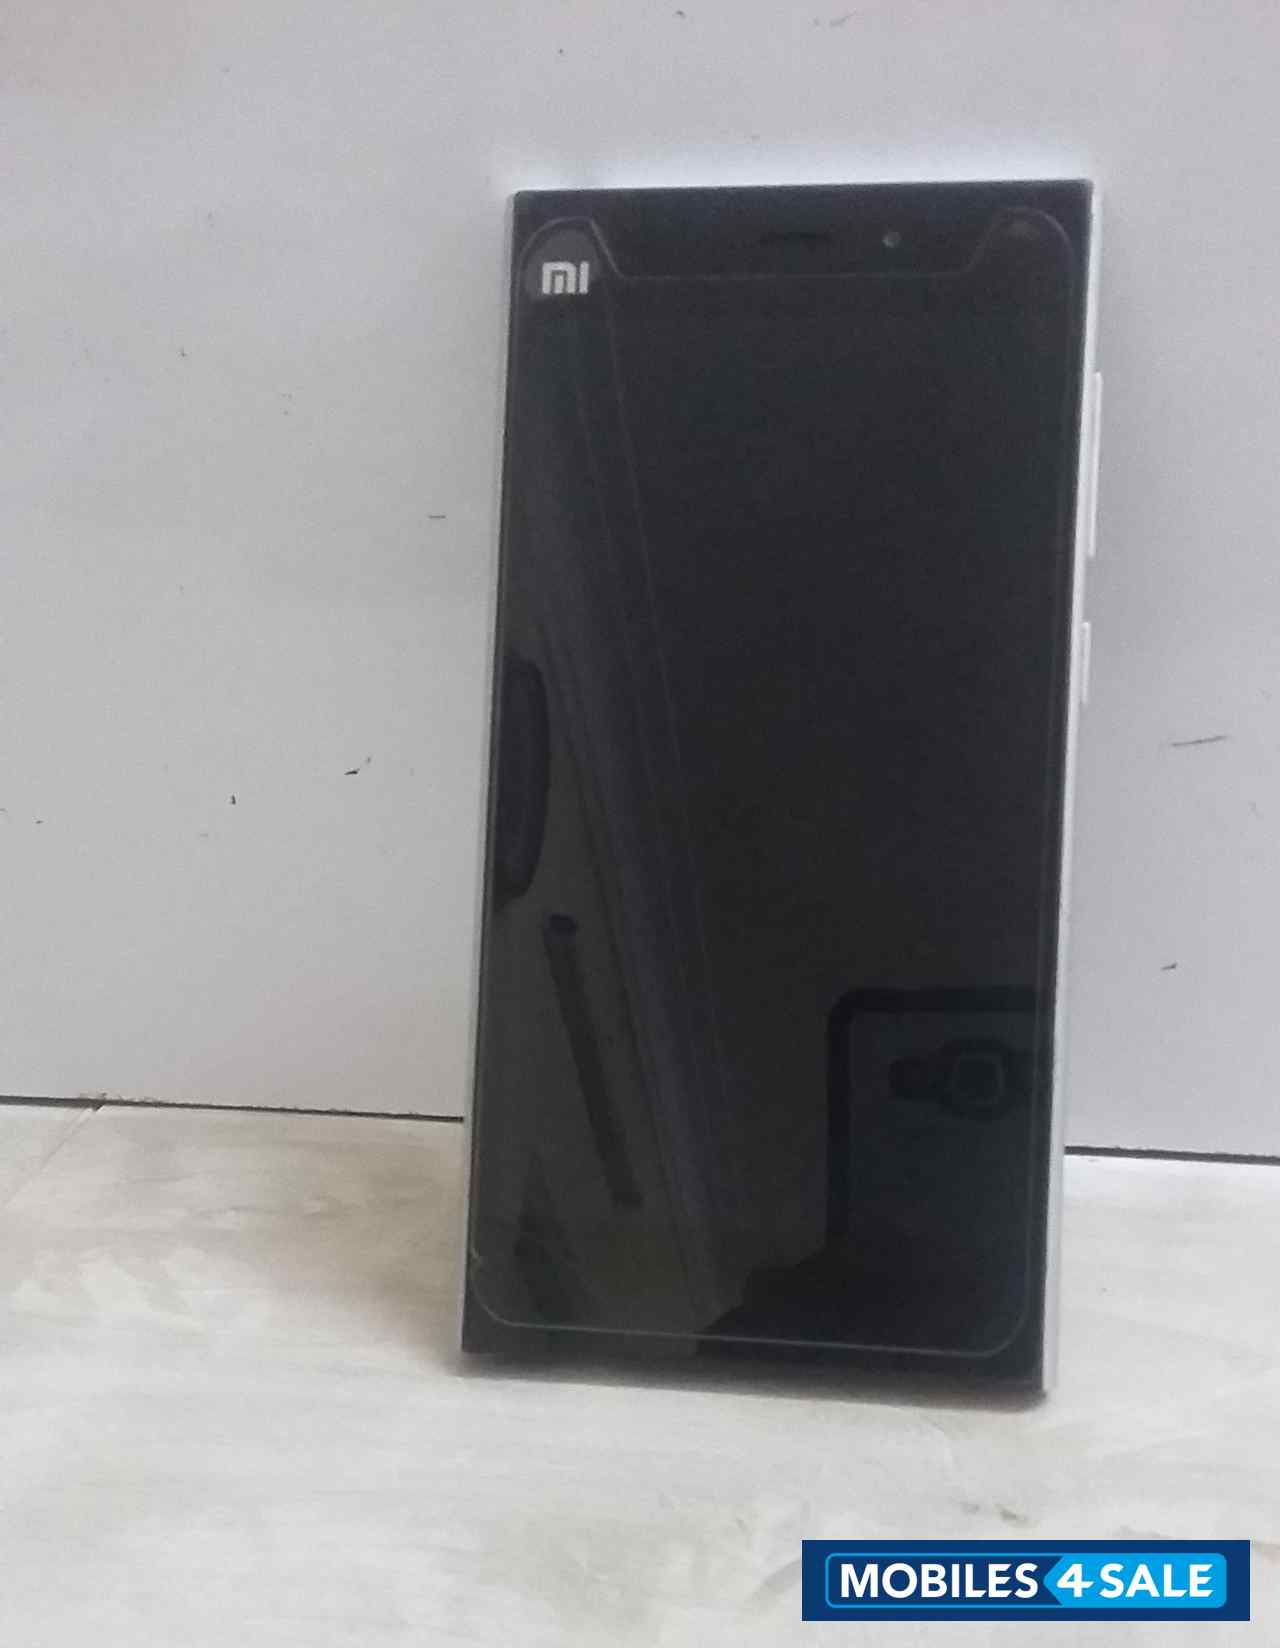 Silver Xiaomi MI-3